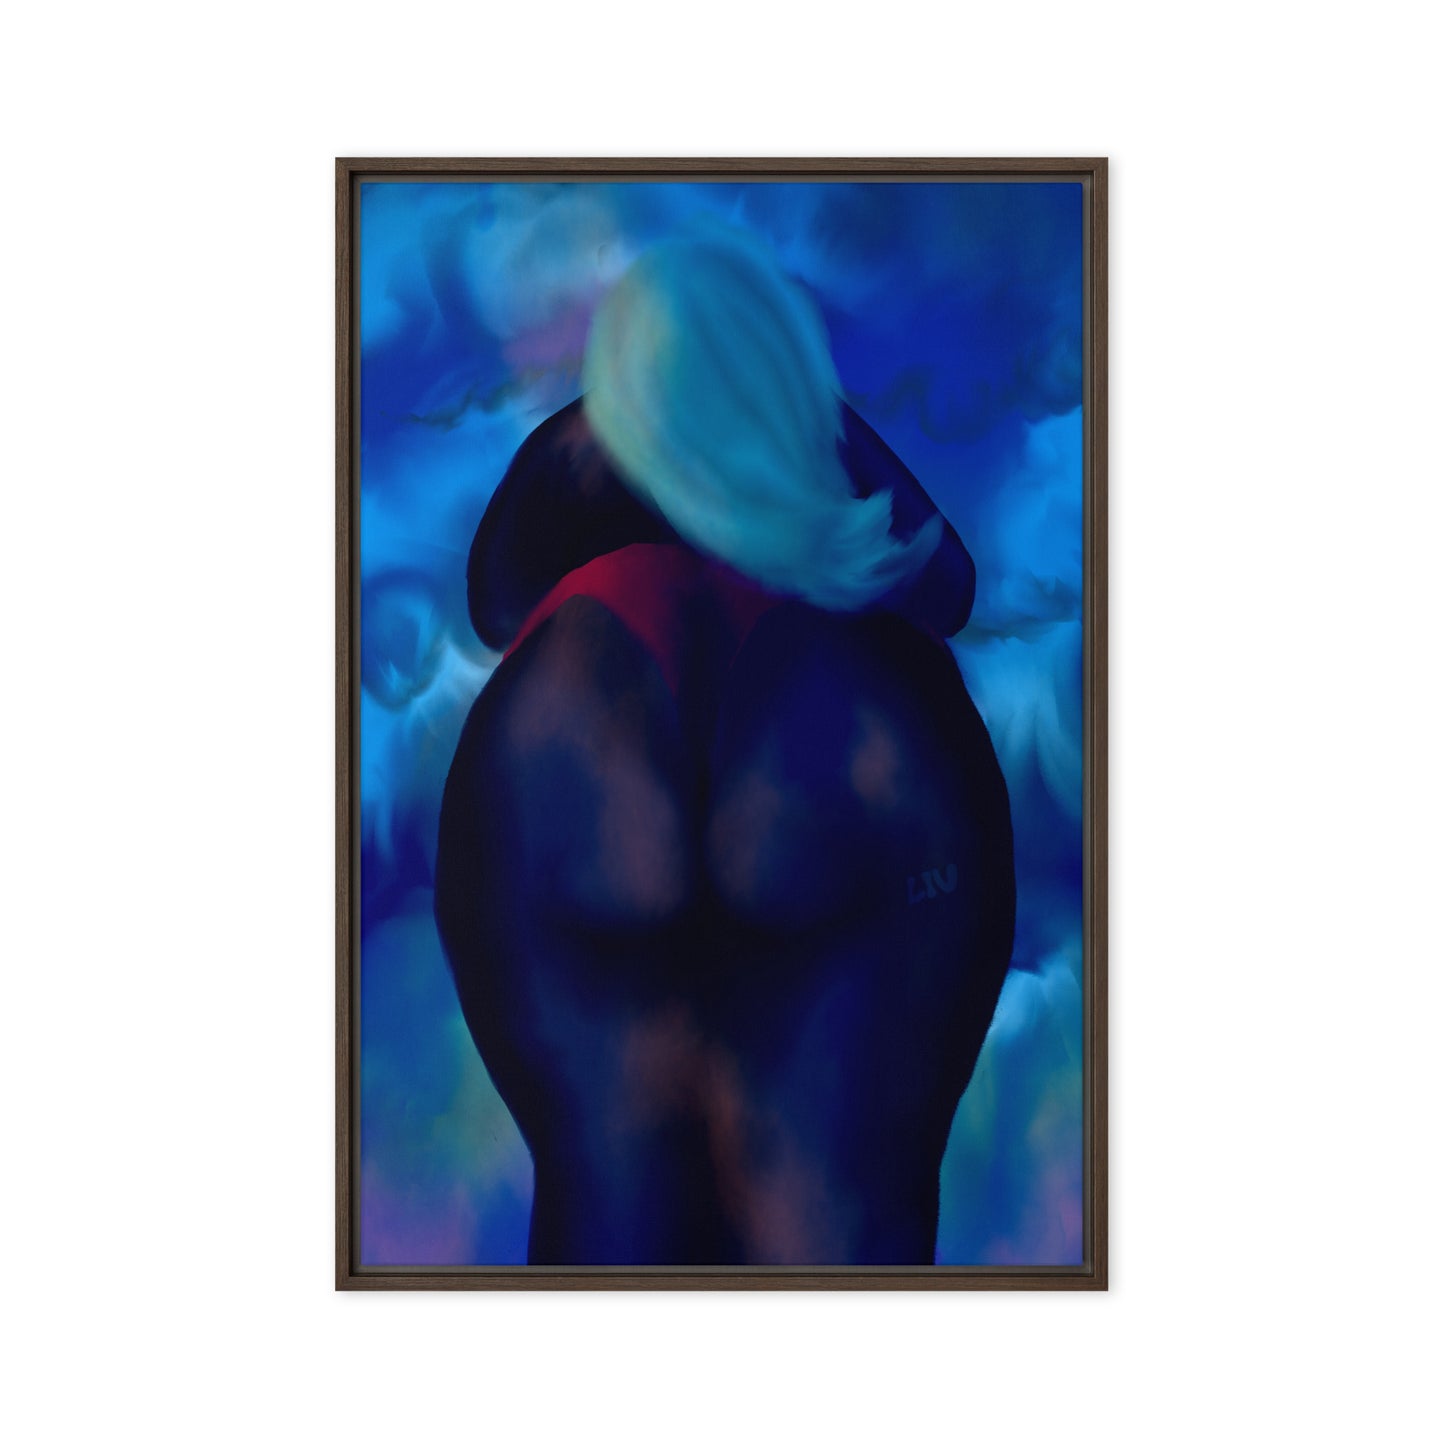 Back shot in Blue Framed canvas